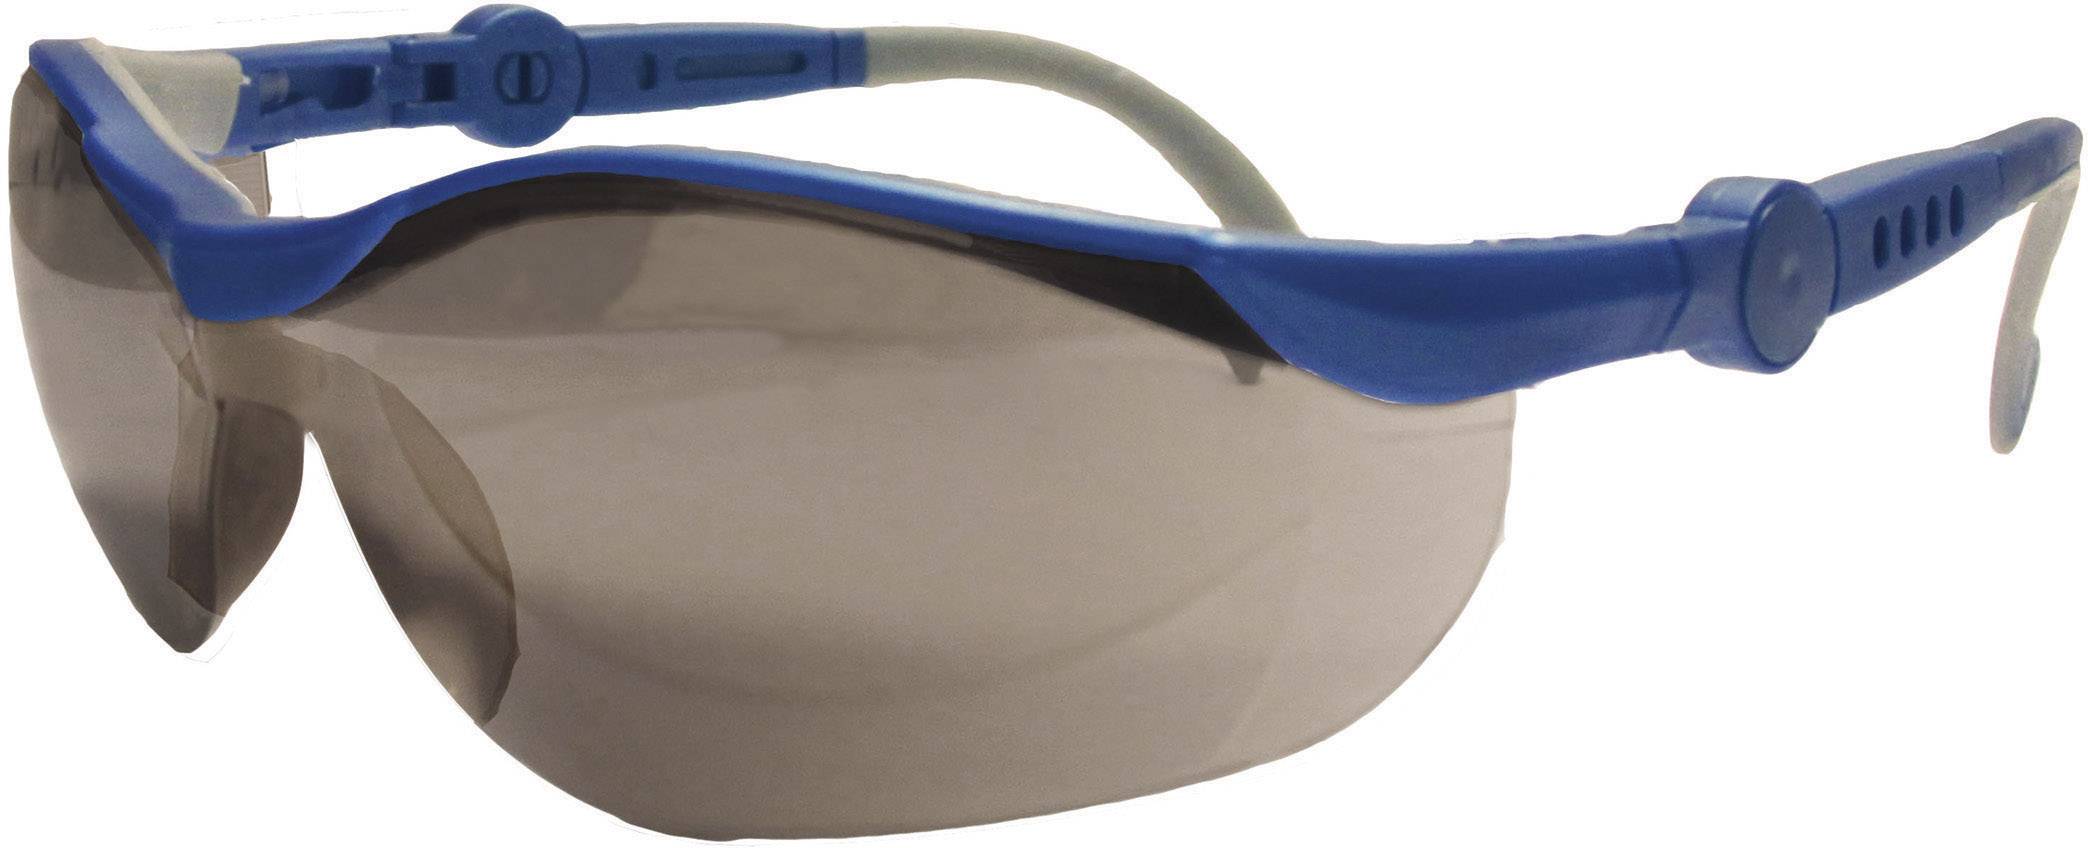 Occhiali protettivi DIN EN 166-1 3M 2721 Blu colore 